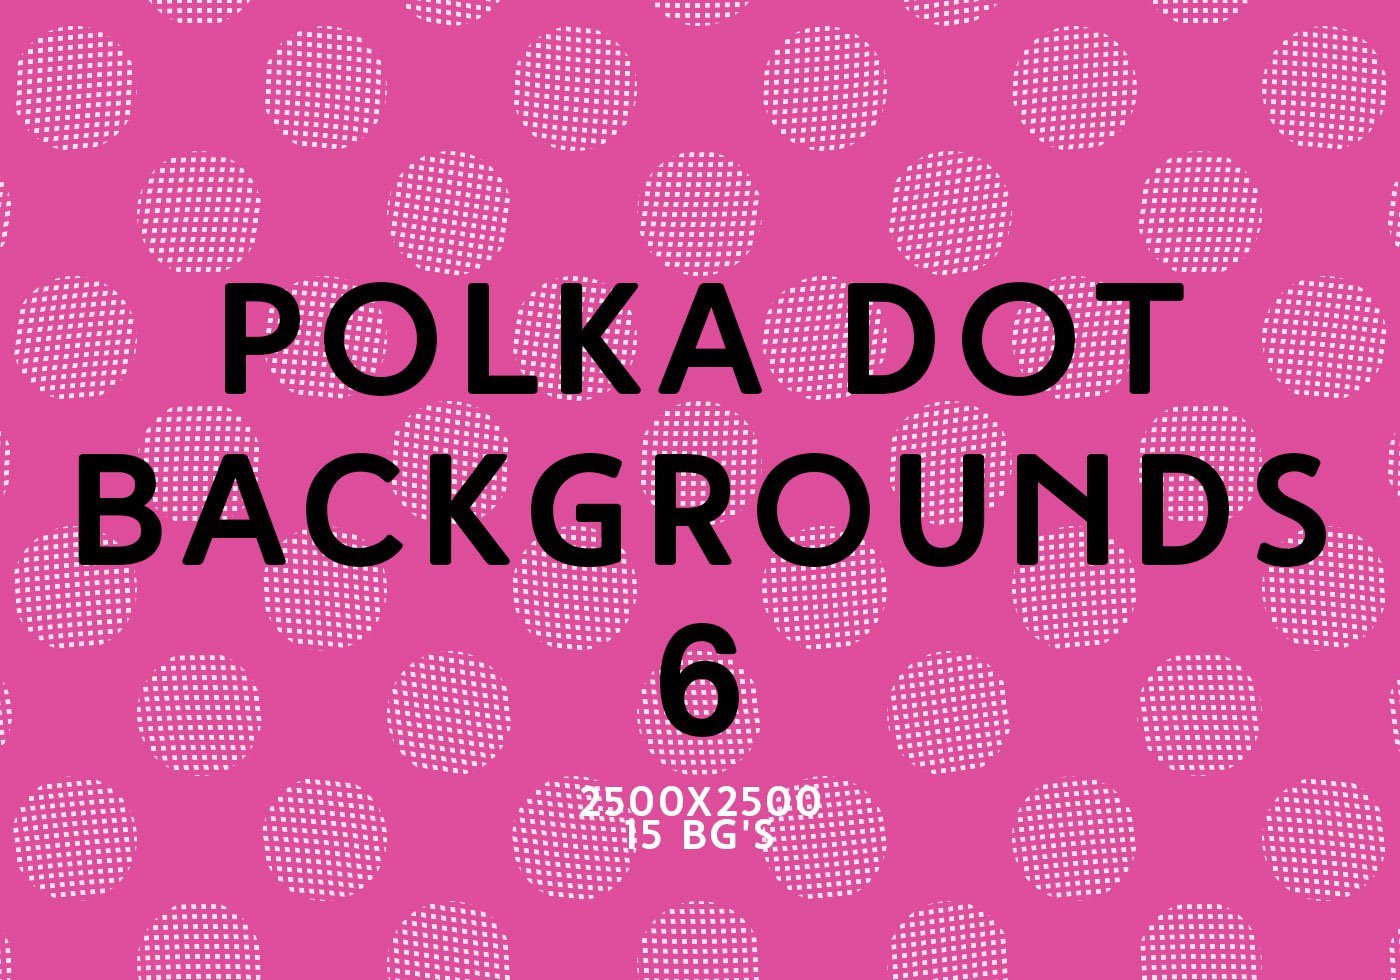 Polka Dot Brush Photoshop Polka Dot Backgrounds 6 Free Shop Brushes at Brusheezy